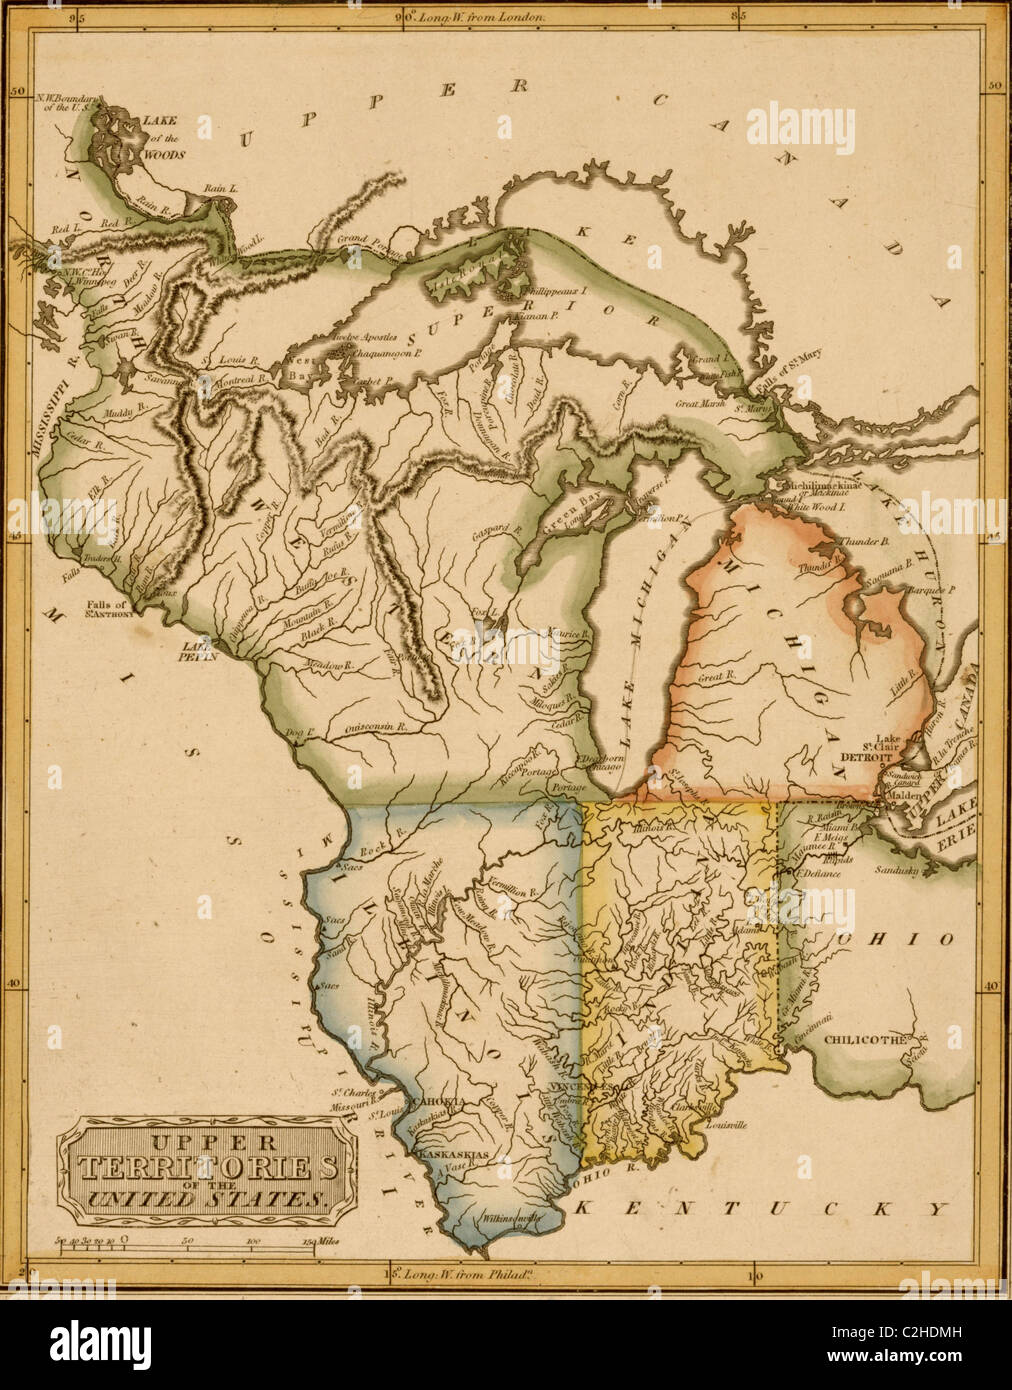 Superior de territorios de los Estados Unidos - 1817 Foto de stock